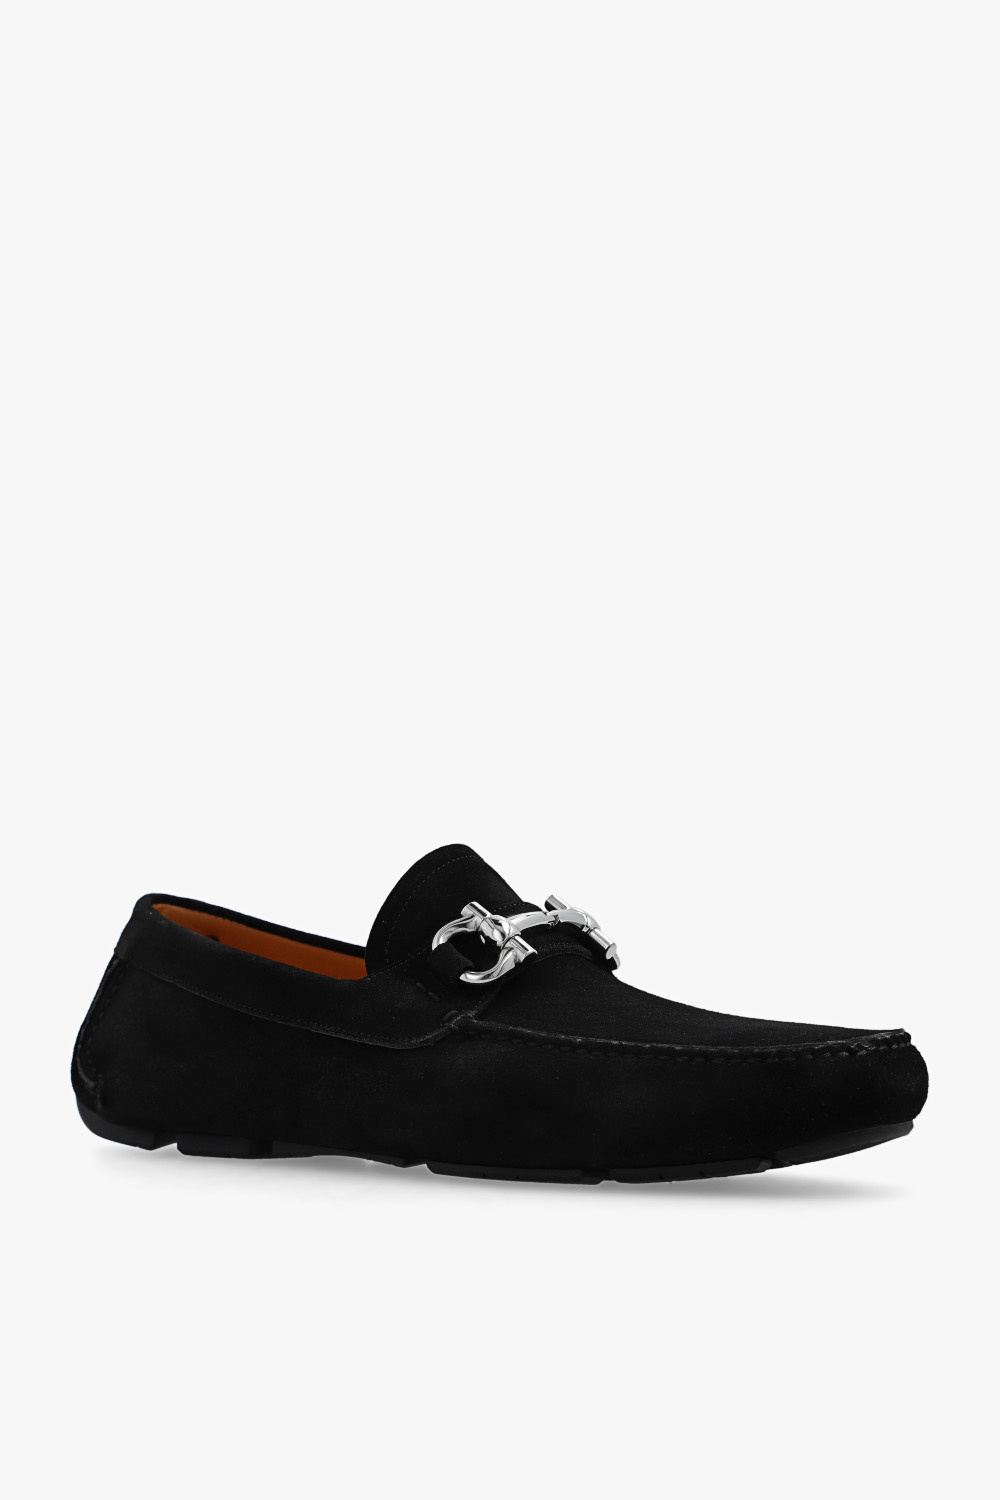 Salvatore Ferragamo ‘Parigi’ leather shoes